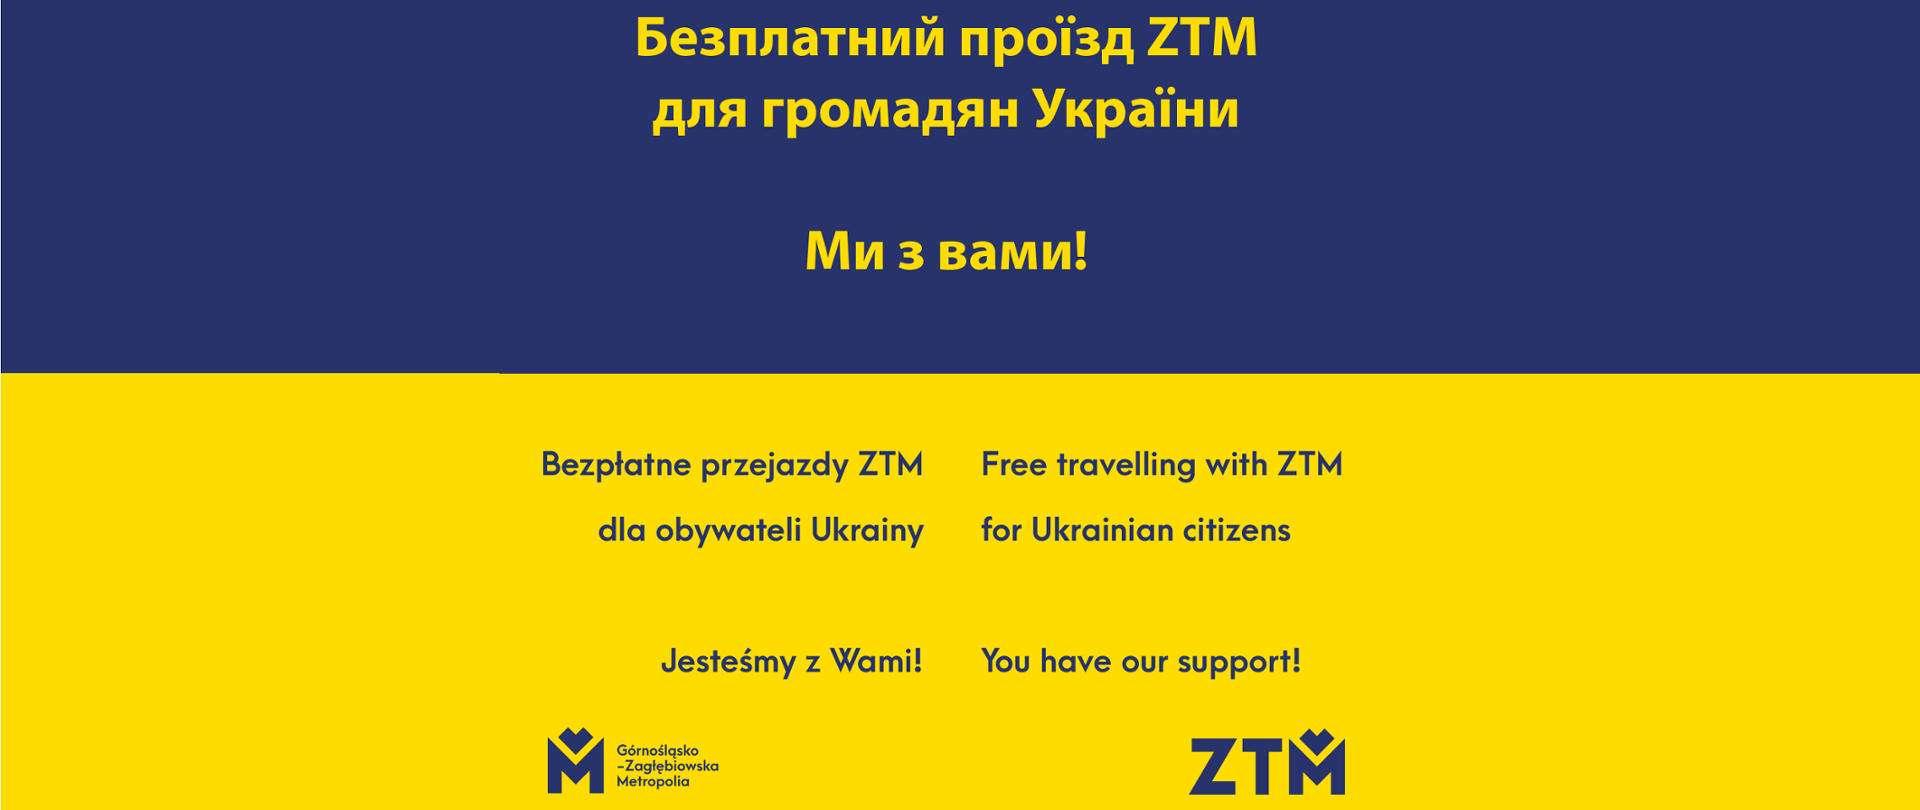 Bezpłatne przejazdy ZTM dla Ukraińców